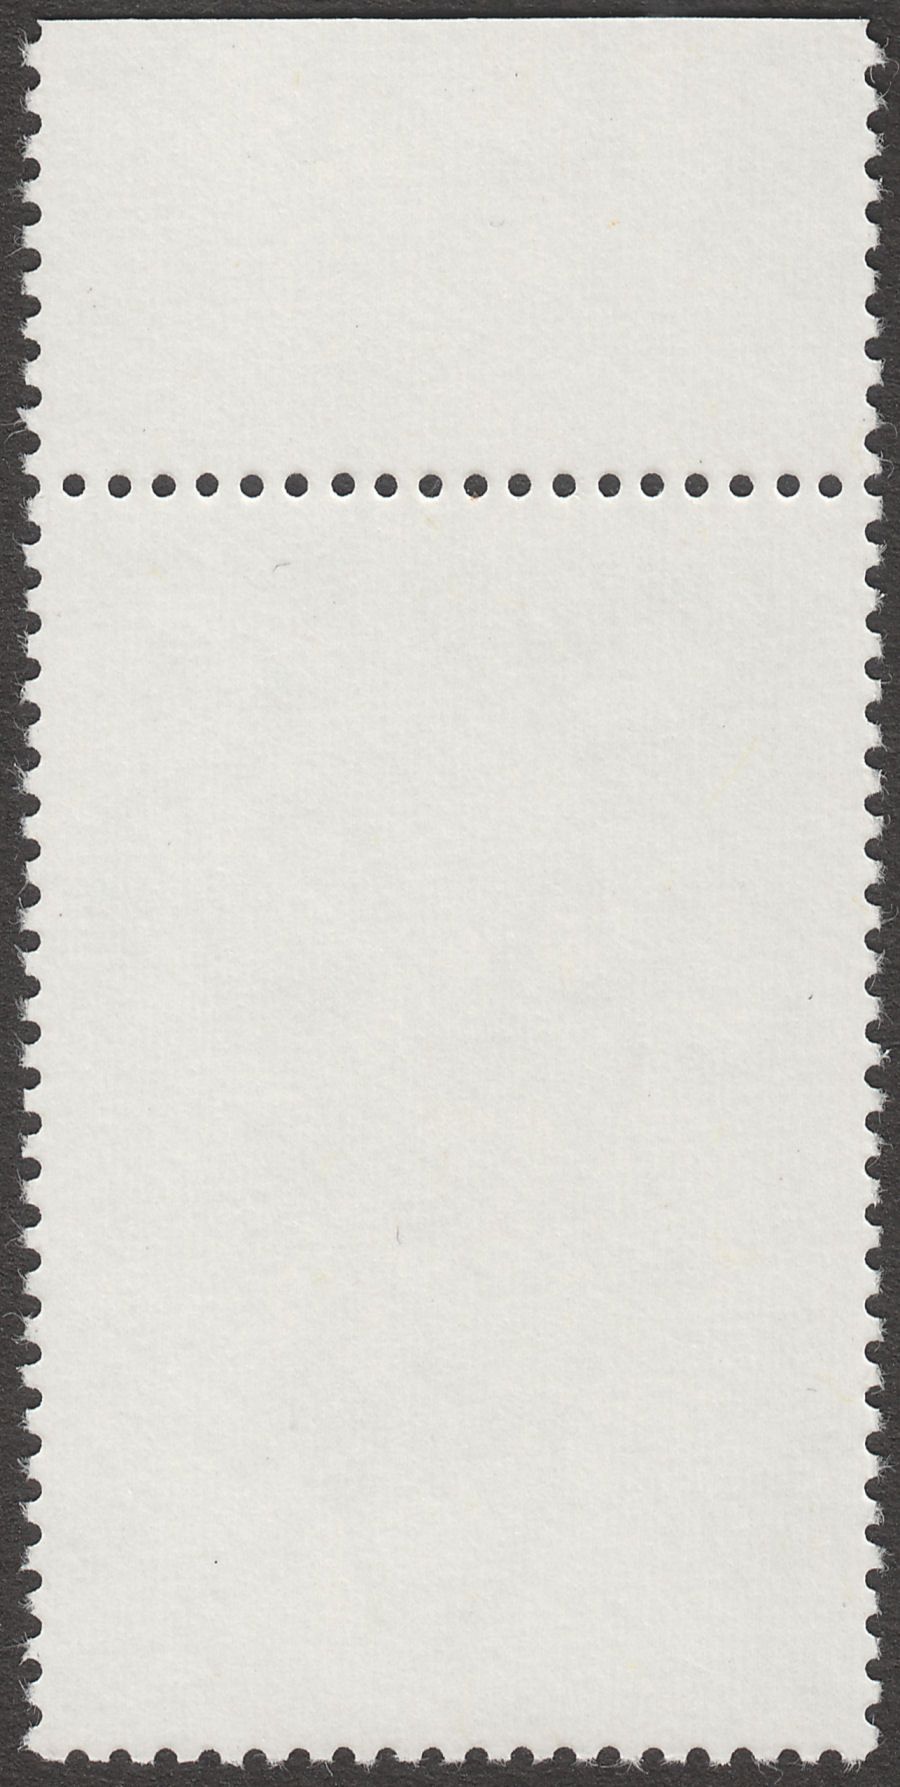 Falkland Islands 1982 QEII Passerines 10p watermark Upright Mint SG434w